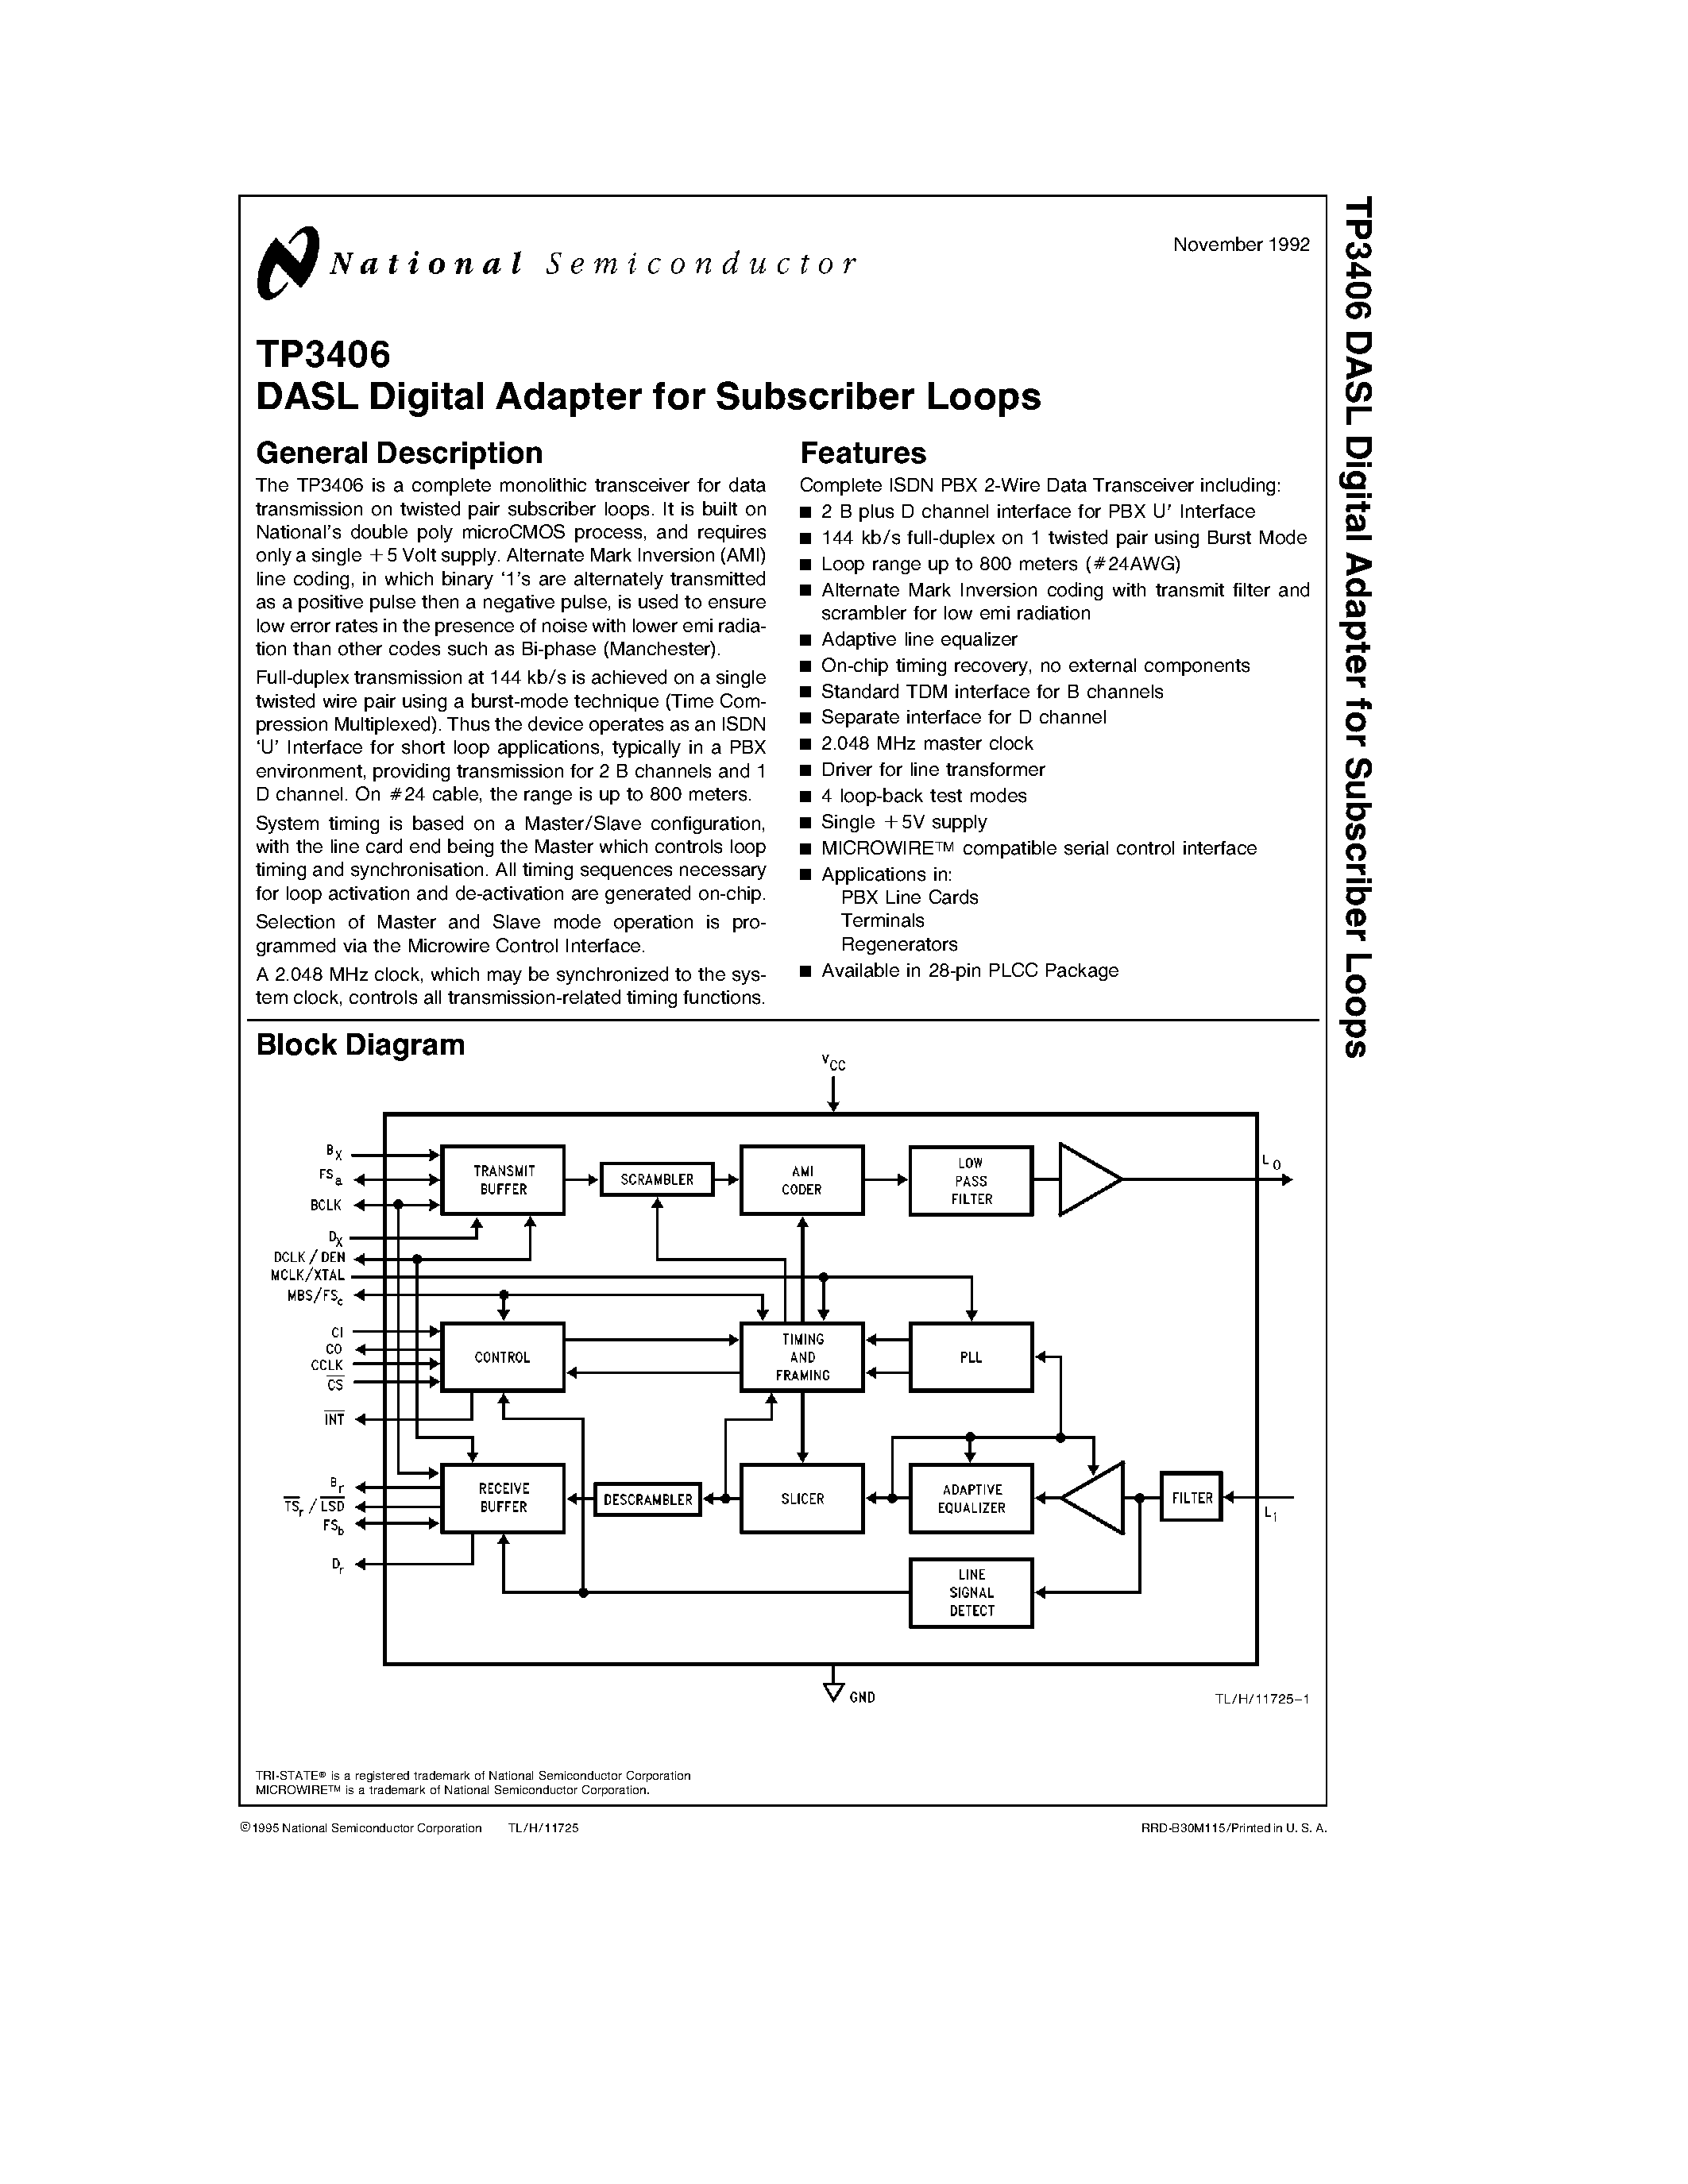 Даташит TP3406V - DASL Digital Adapter for Subscriber Loops страница 1